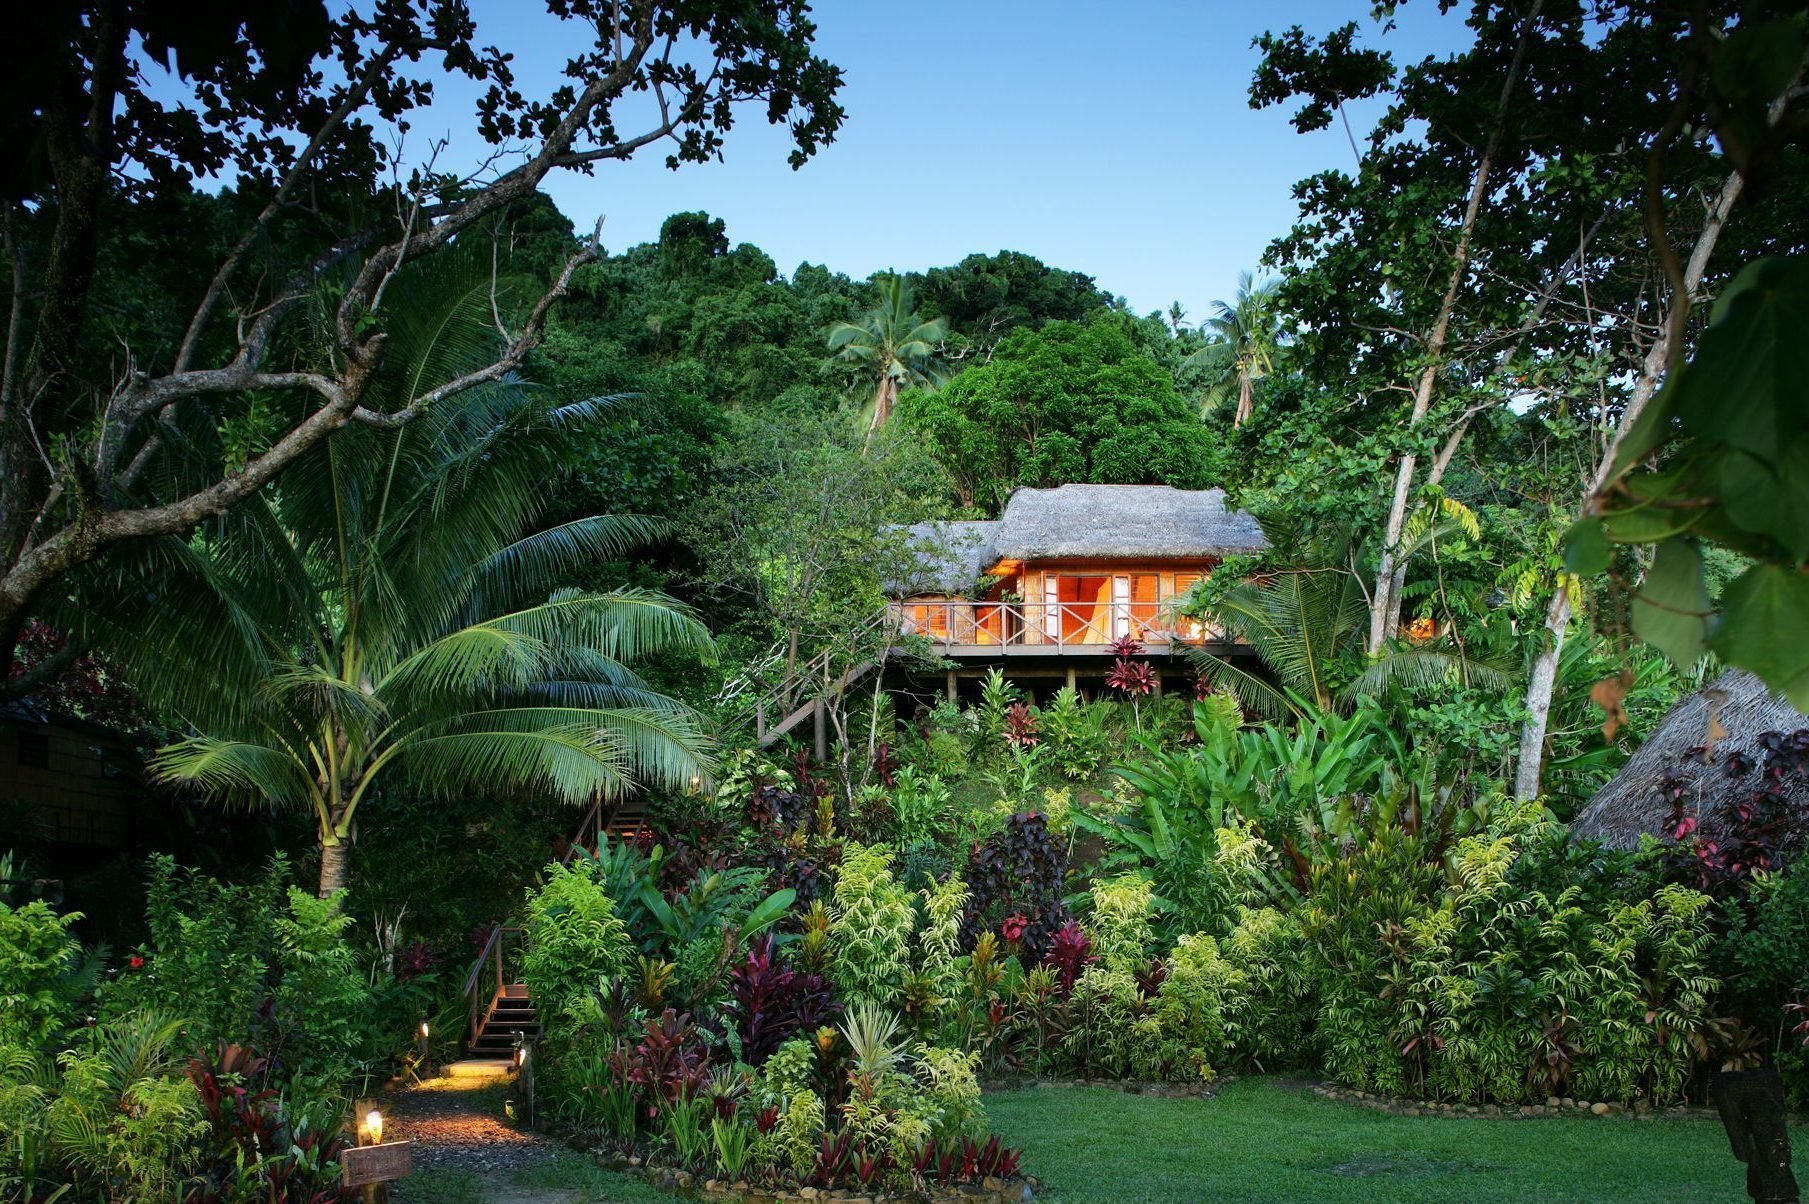 Matangi Private Island Resort